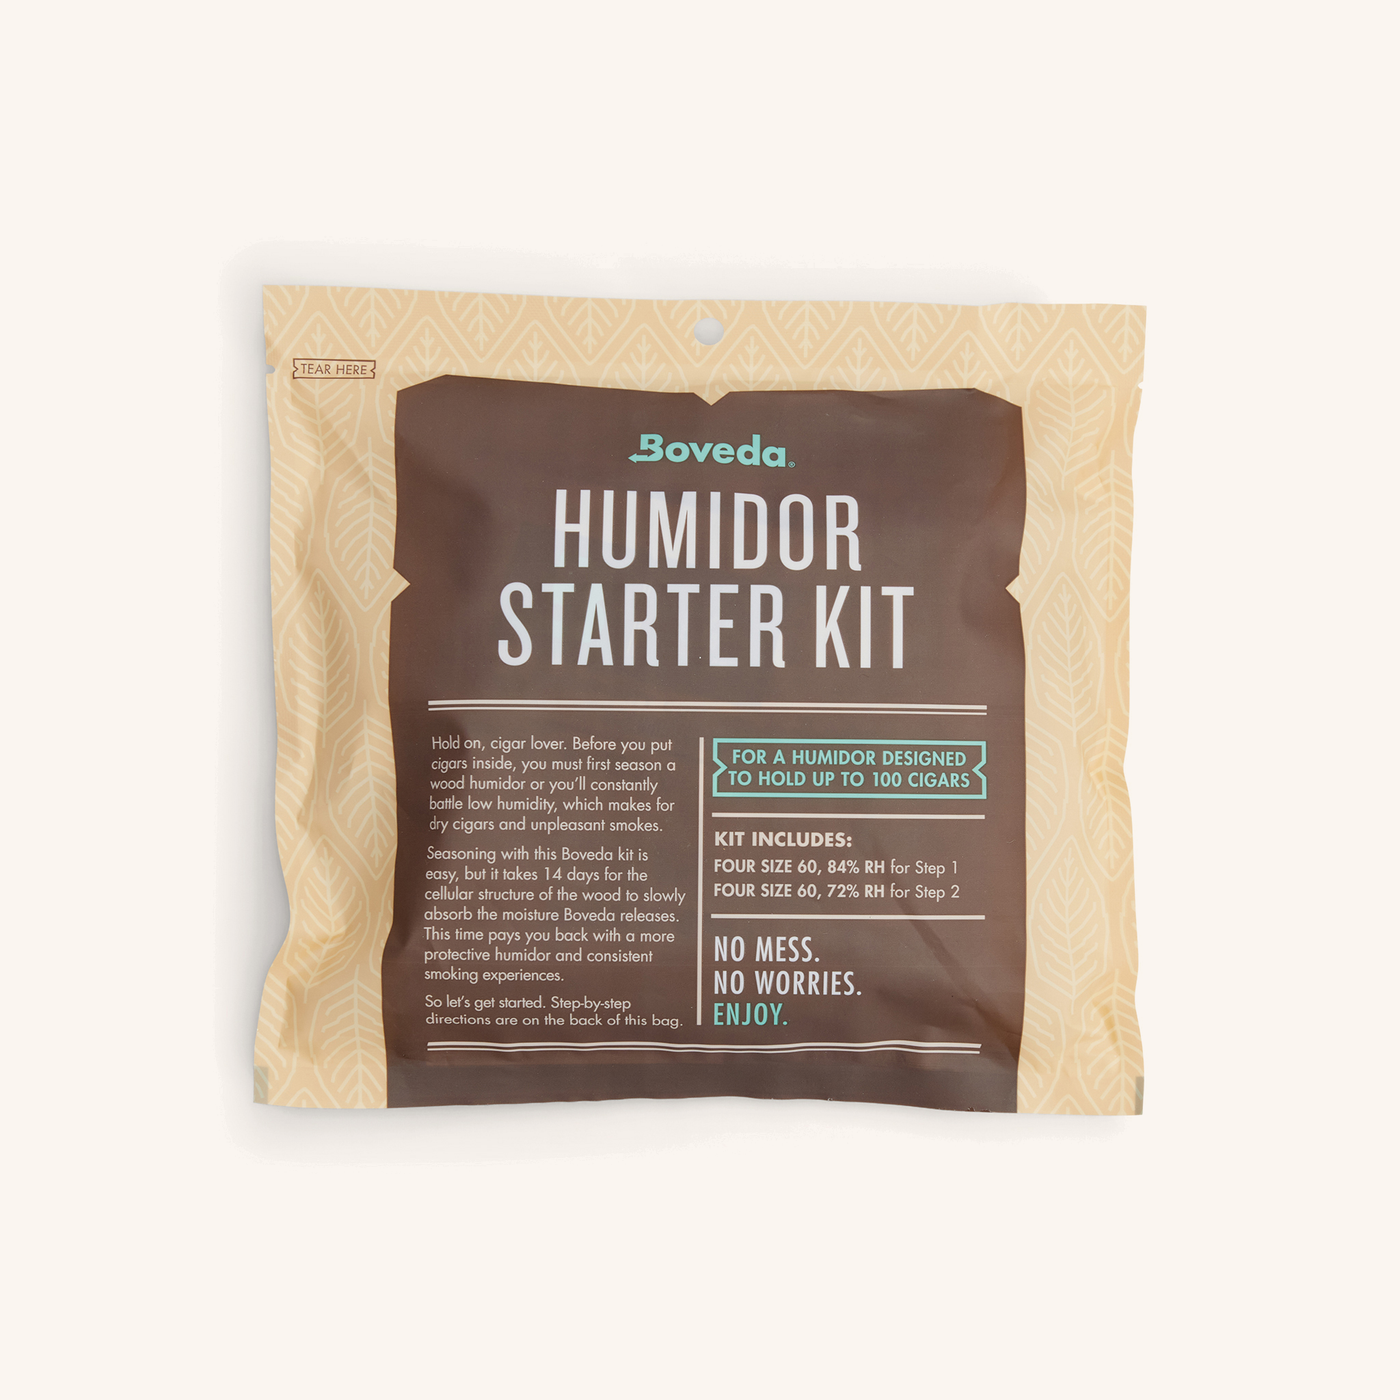 Boveda Humidor Starter Kit 100 Count